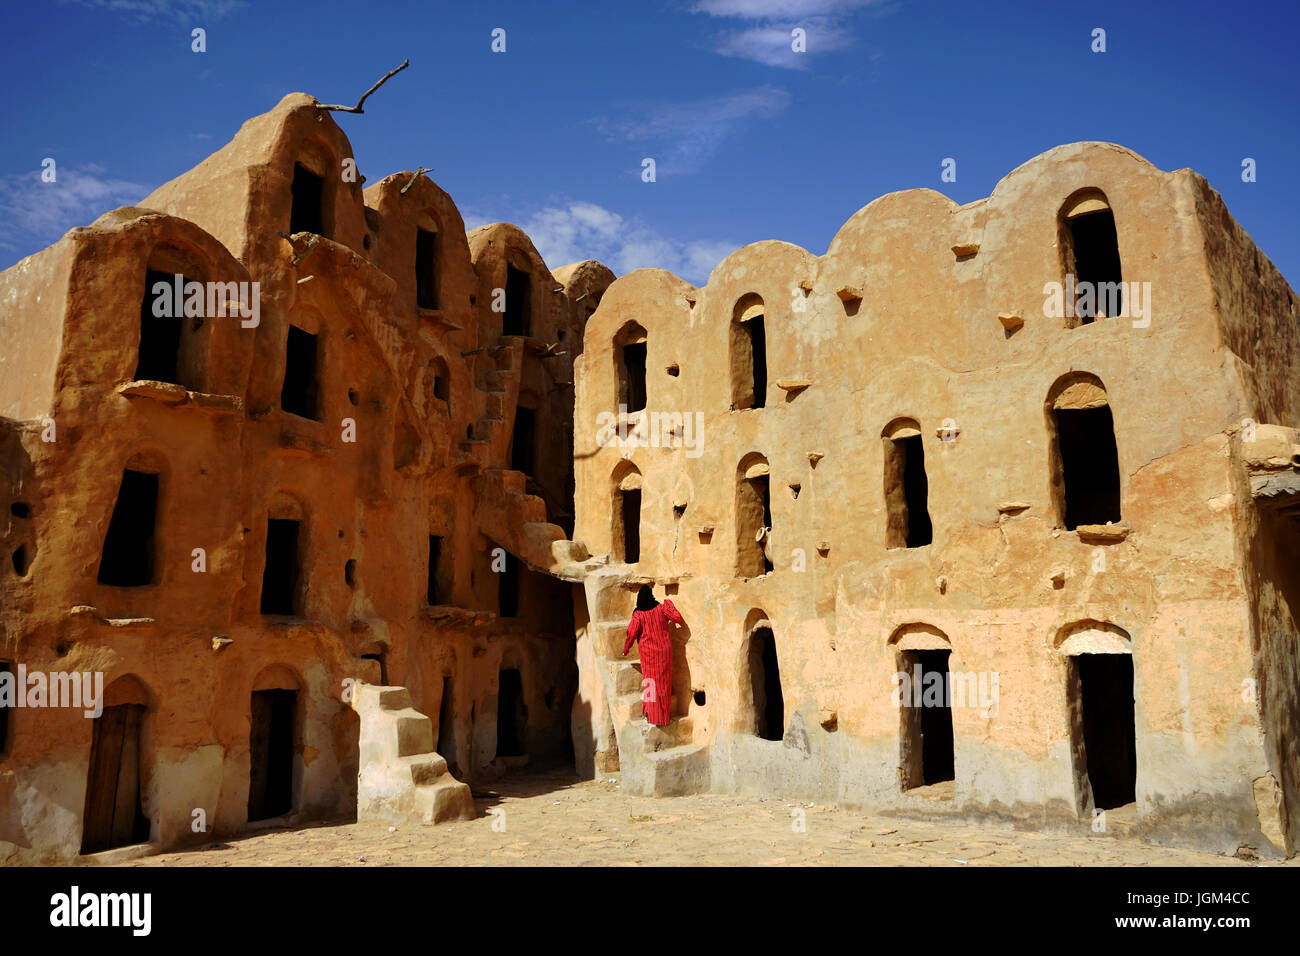 El Ksar Ouled Soltane, un antiguo granero fortificado o ksar, ubicado en el distrito de Tataouine, en el sur de Túnez Foto de stock